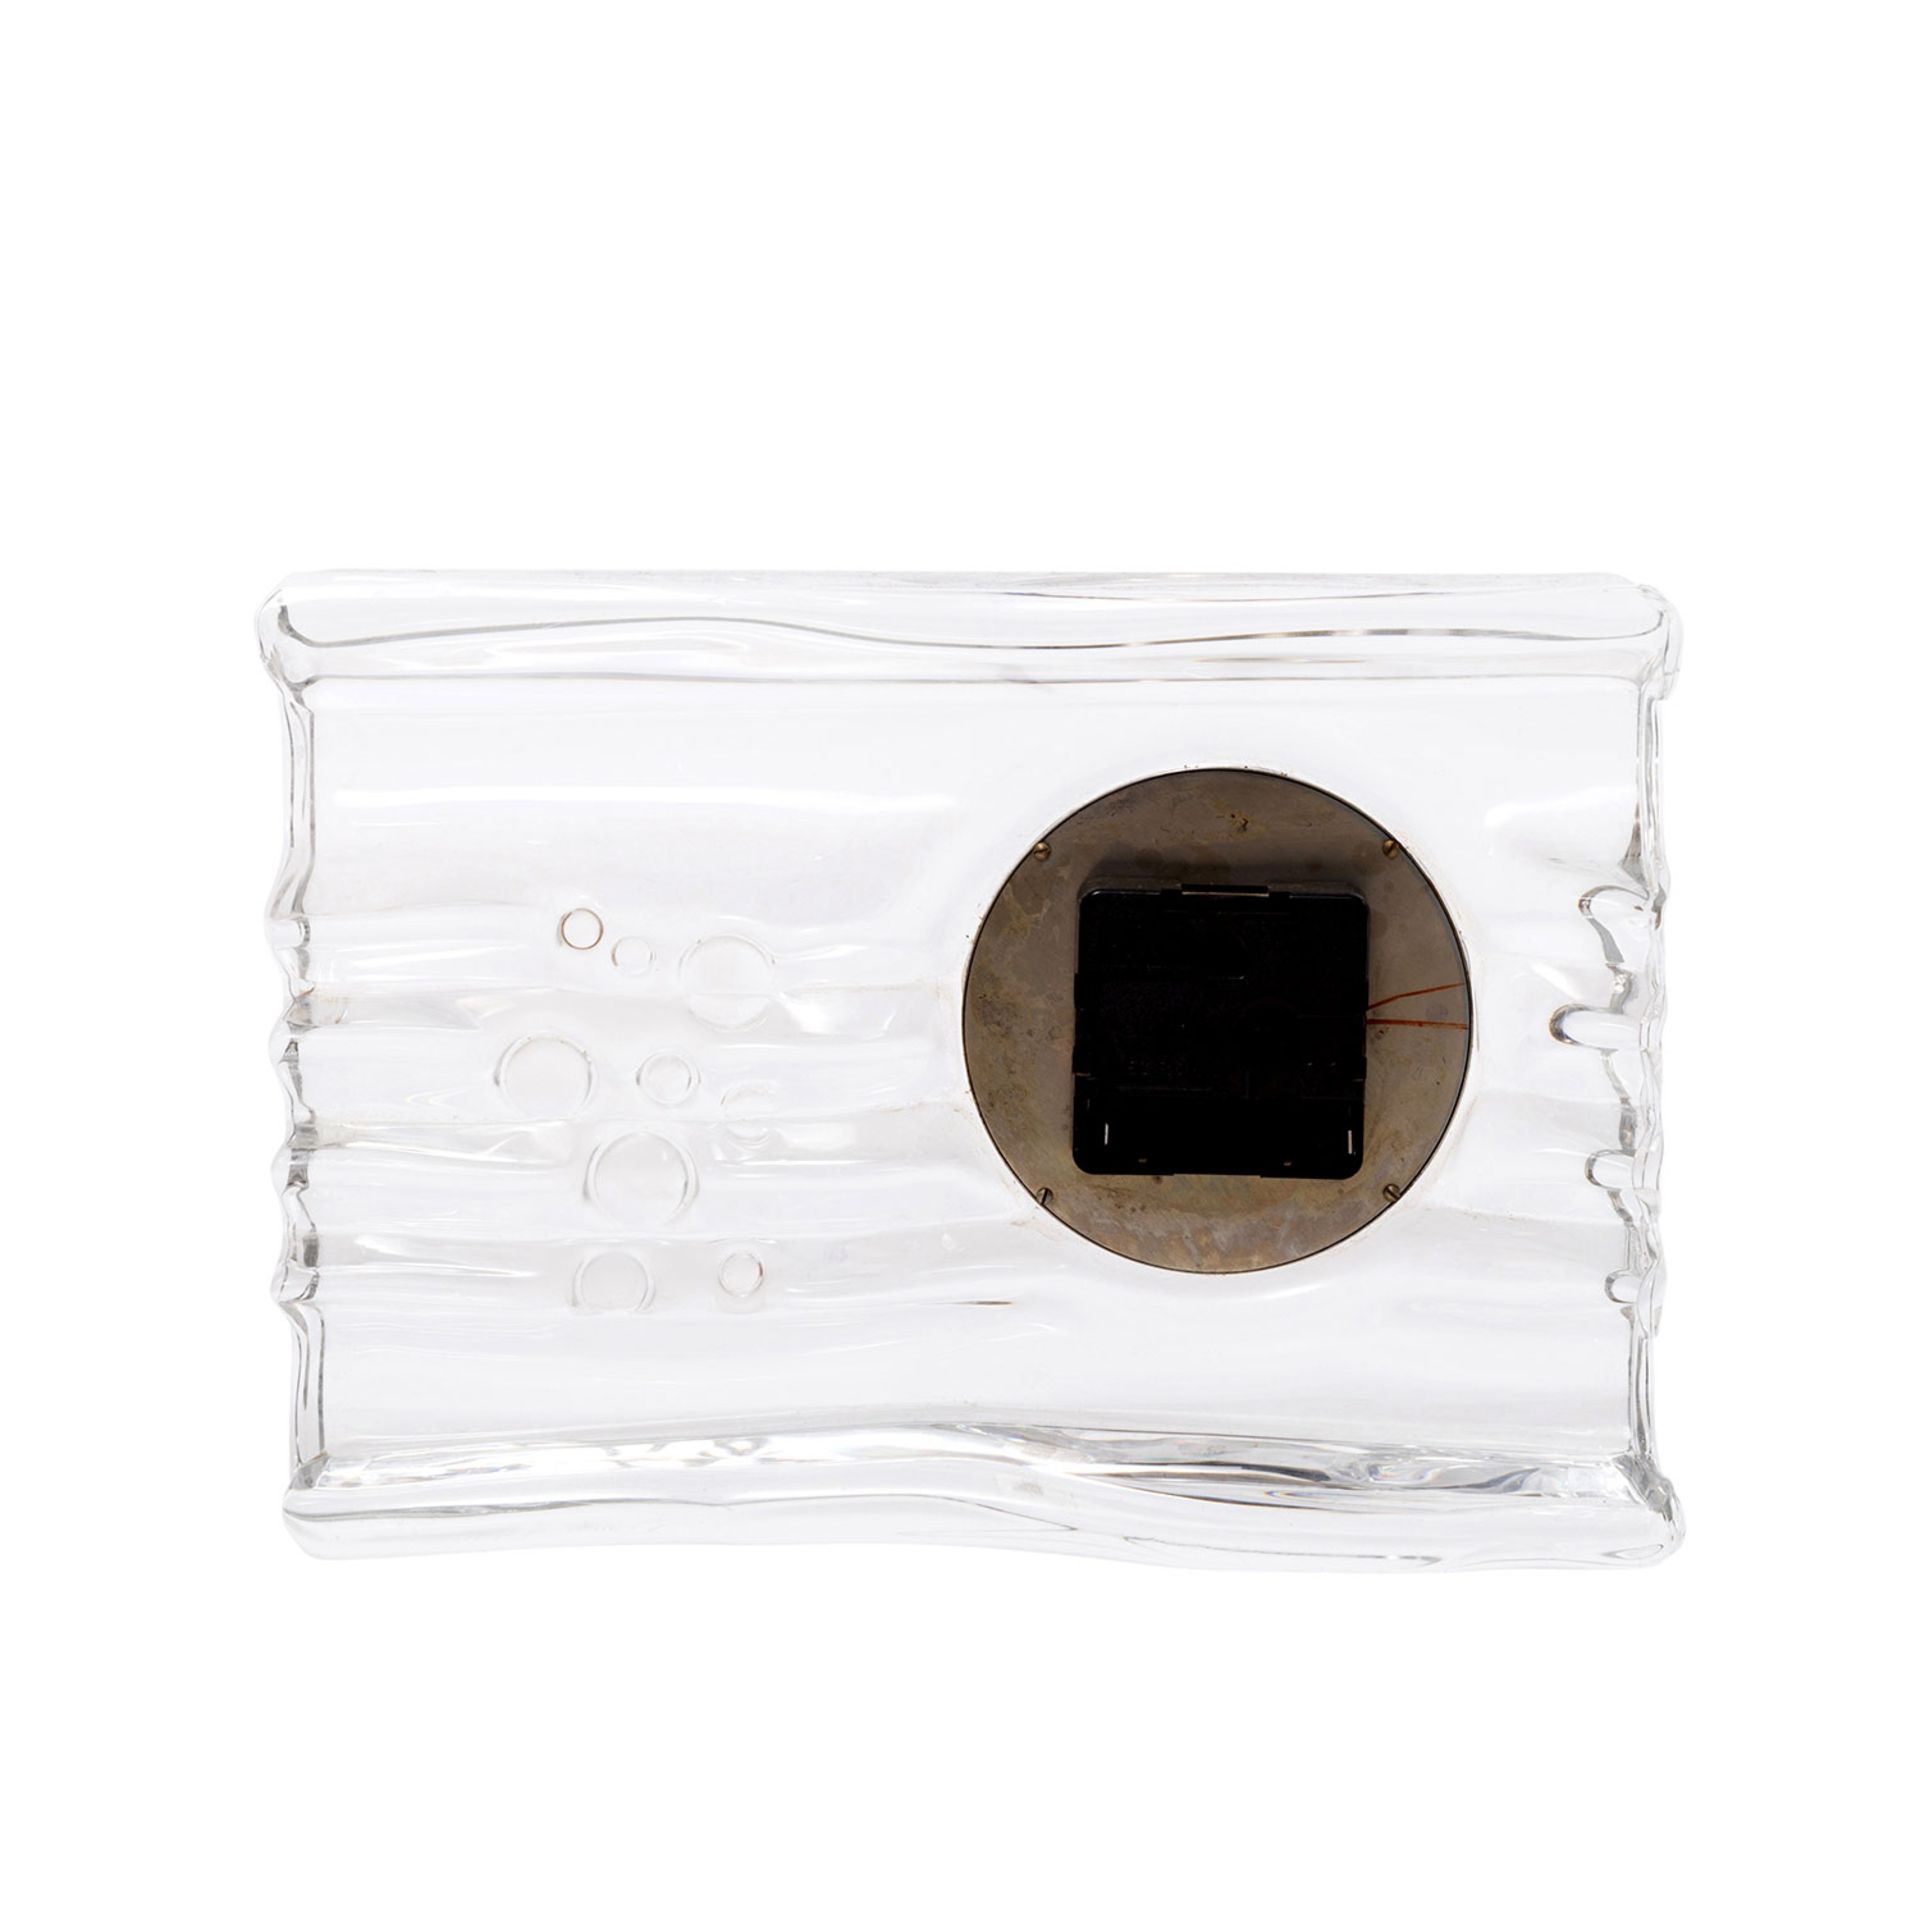 DAUM Quartz-Uhr, 20.Jh.quadratischer Glaskorpus mit eingesetzter Uhr, batteriebetrieben, - Image 4 of 4